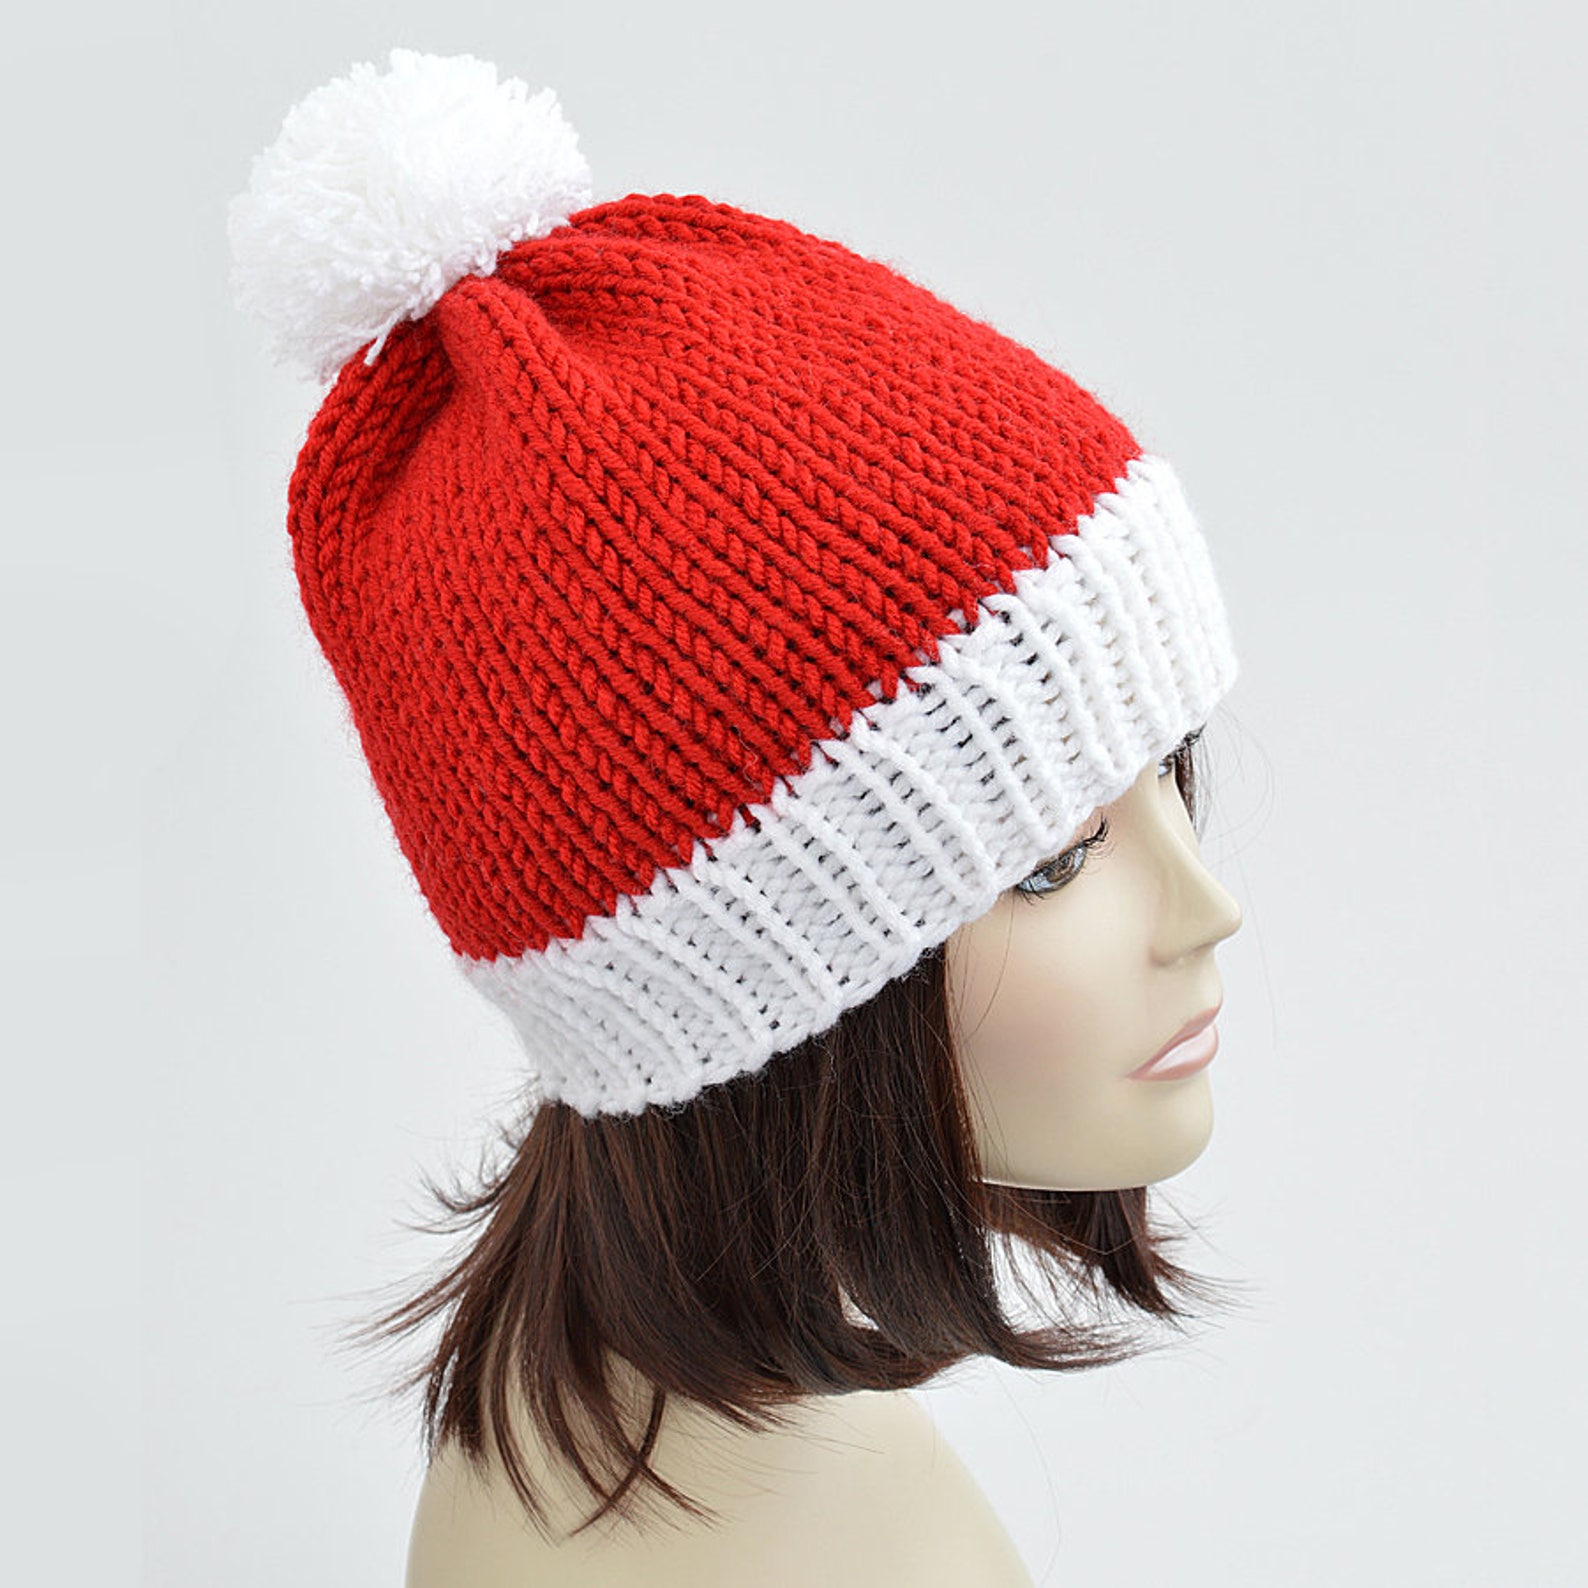 Knit hat. Вязаная шапочка Рождество. Pompom Christmas hat. Hat with Pompom. Фотография рождественых шапках ТУМКИ.